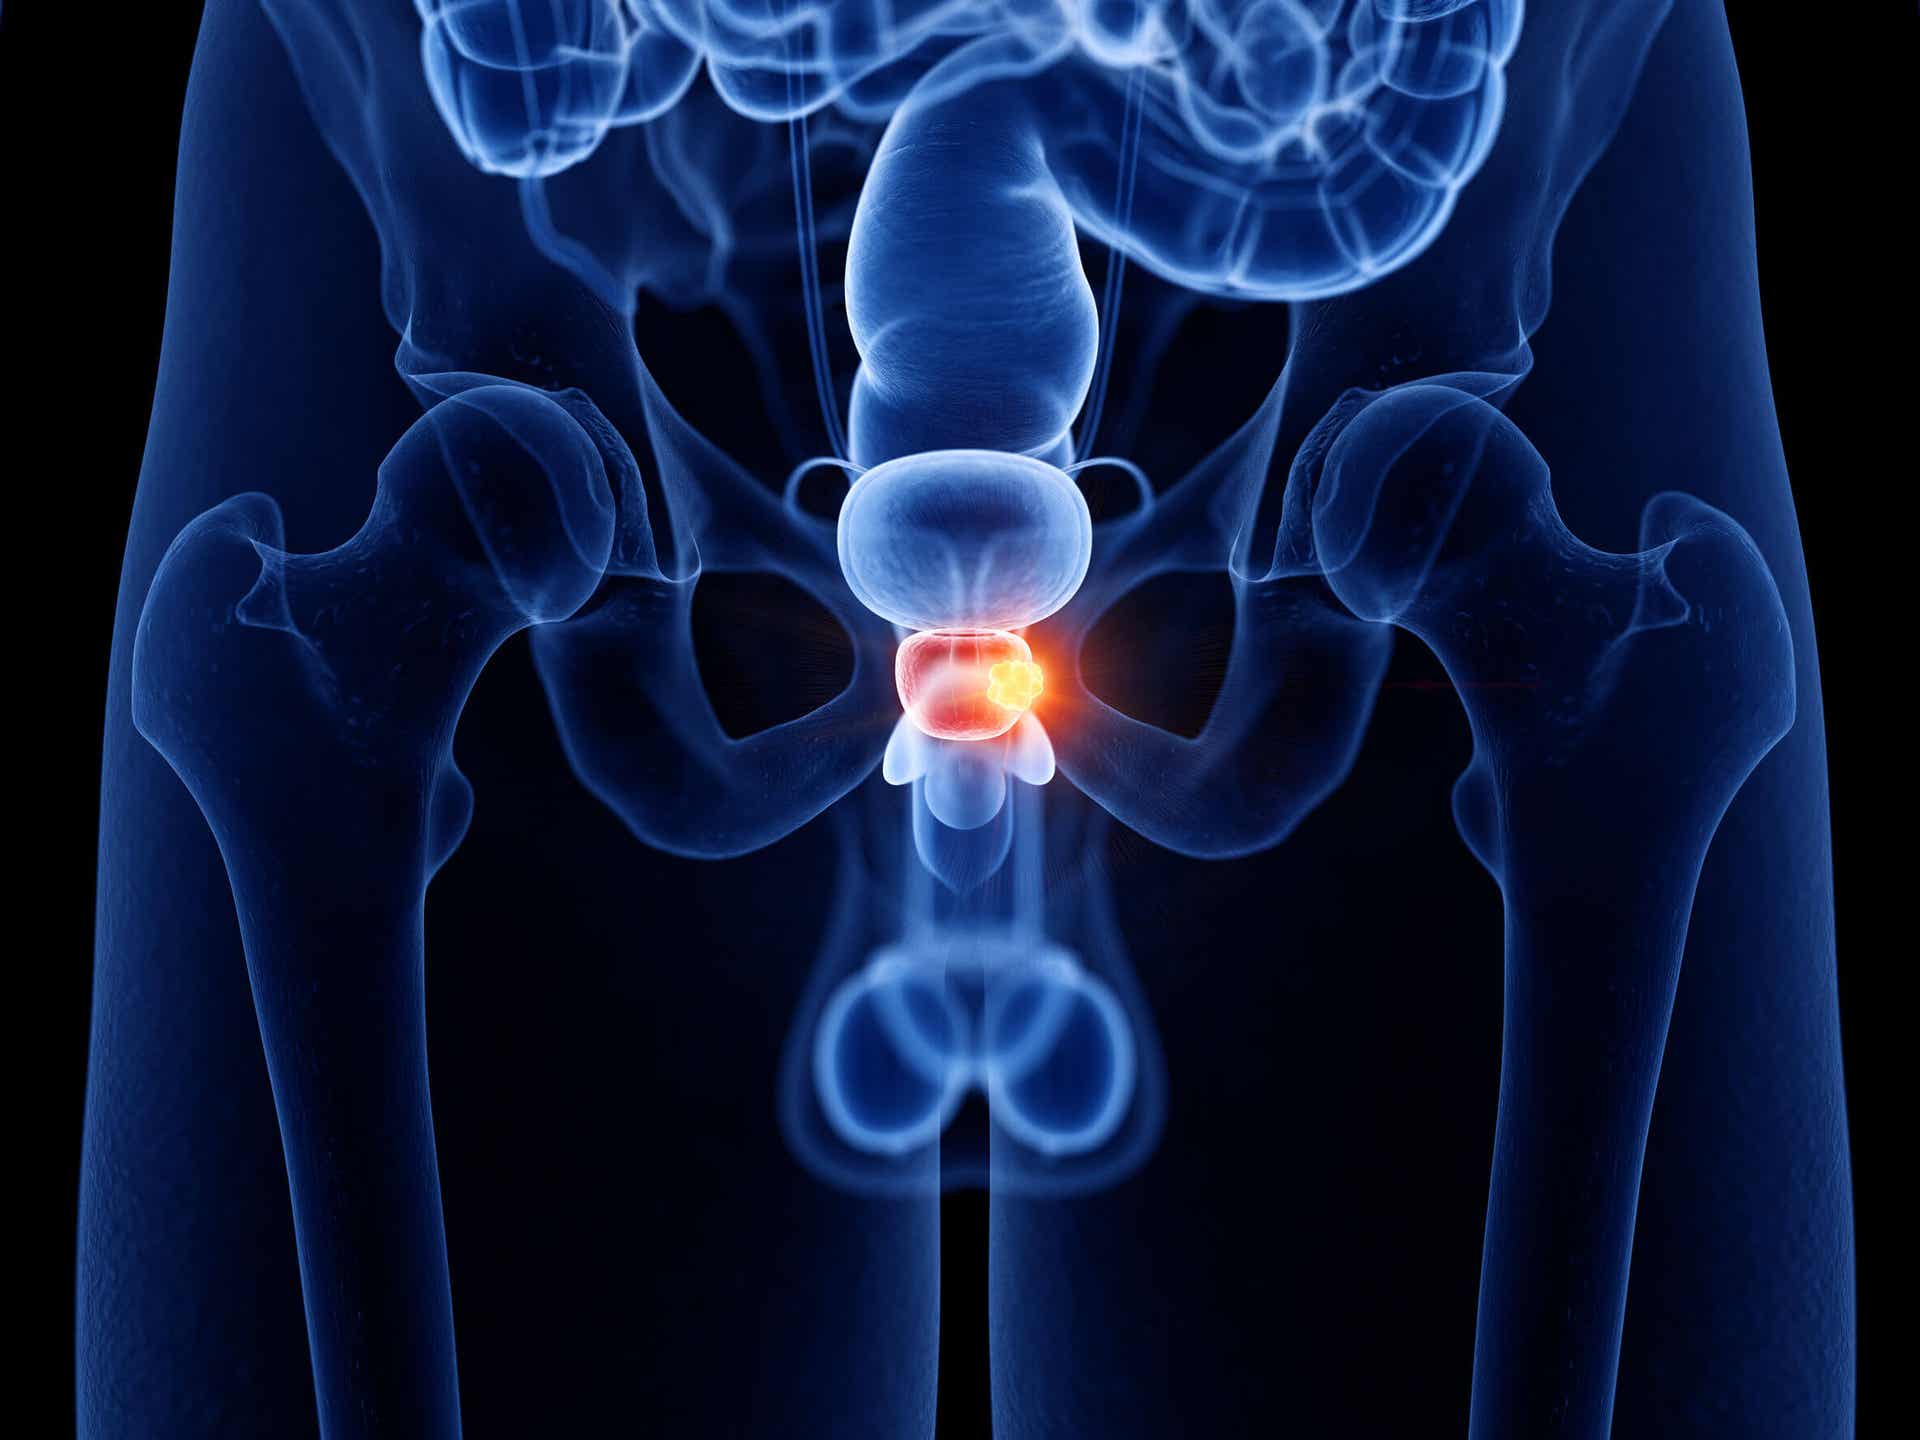 La incontinencia urinaria puede deberse a problemas de la próstata.